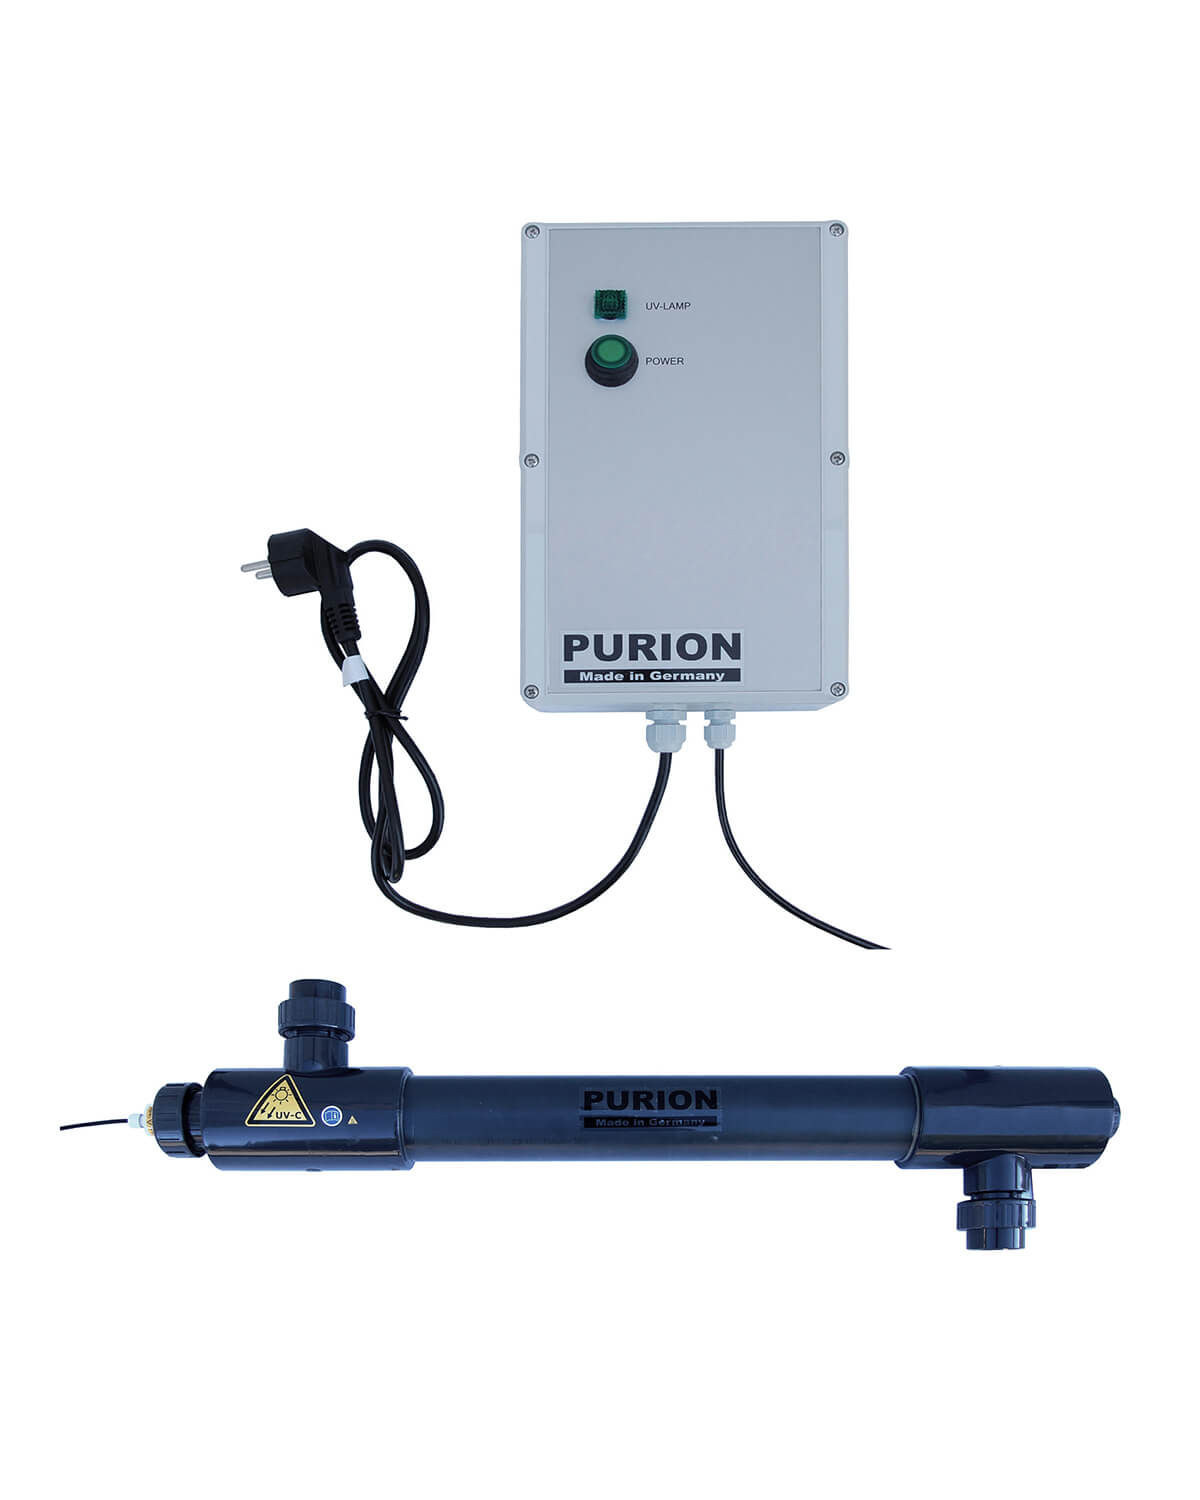 Das PURION 2501 PVC-U Basic System nutzt das UV-C-Desinfektionsverfahren zur effizienten Desinfektion von Salzwasserpools. (PURION GmbH)